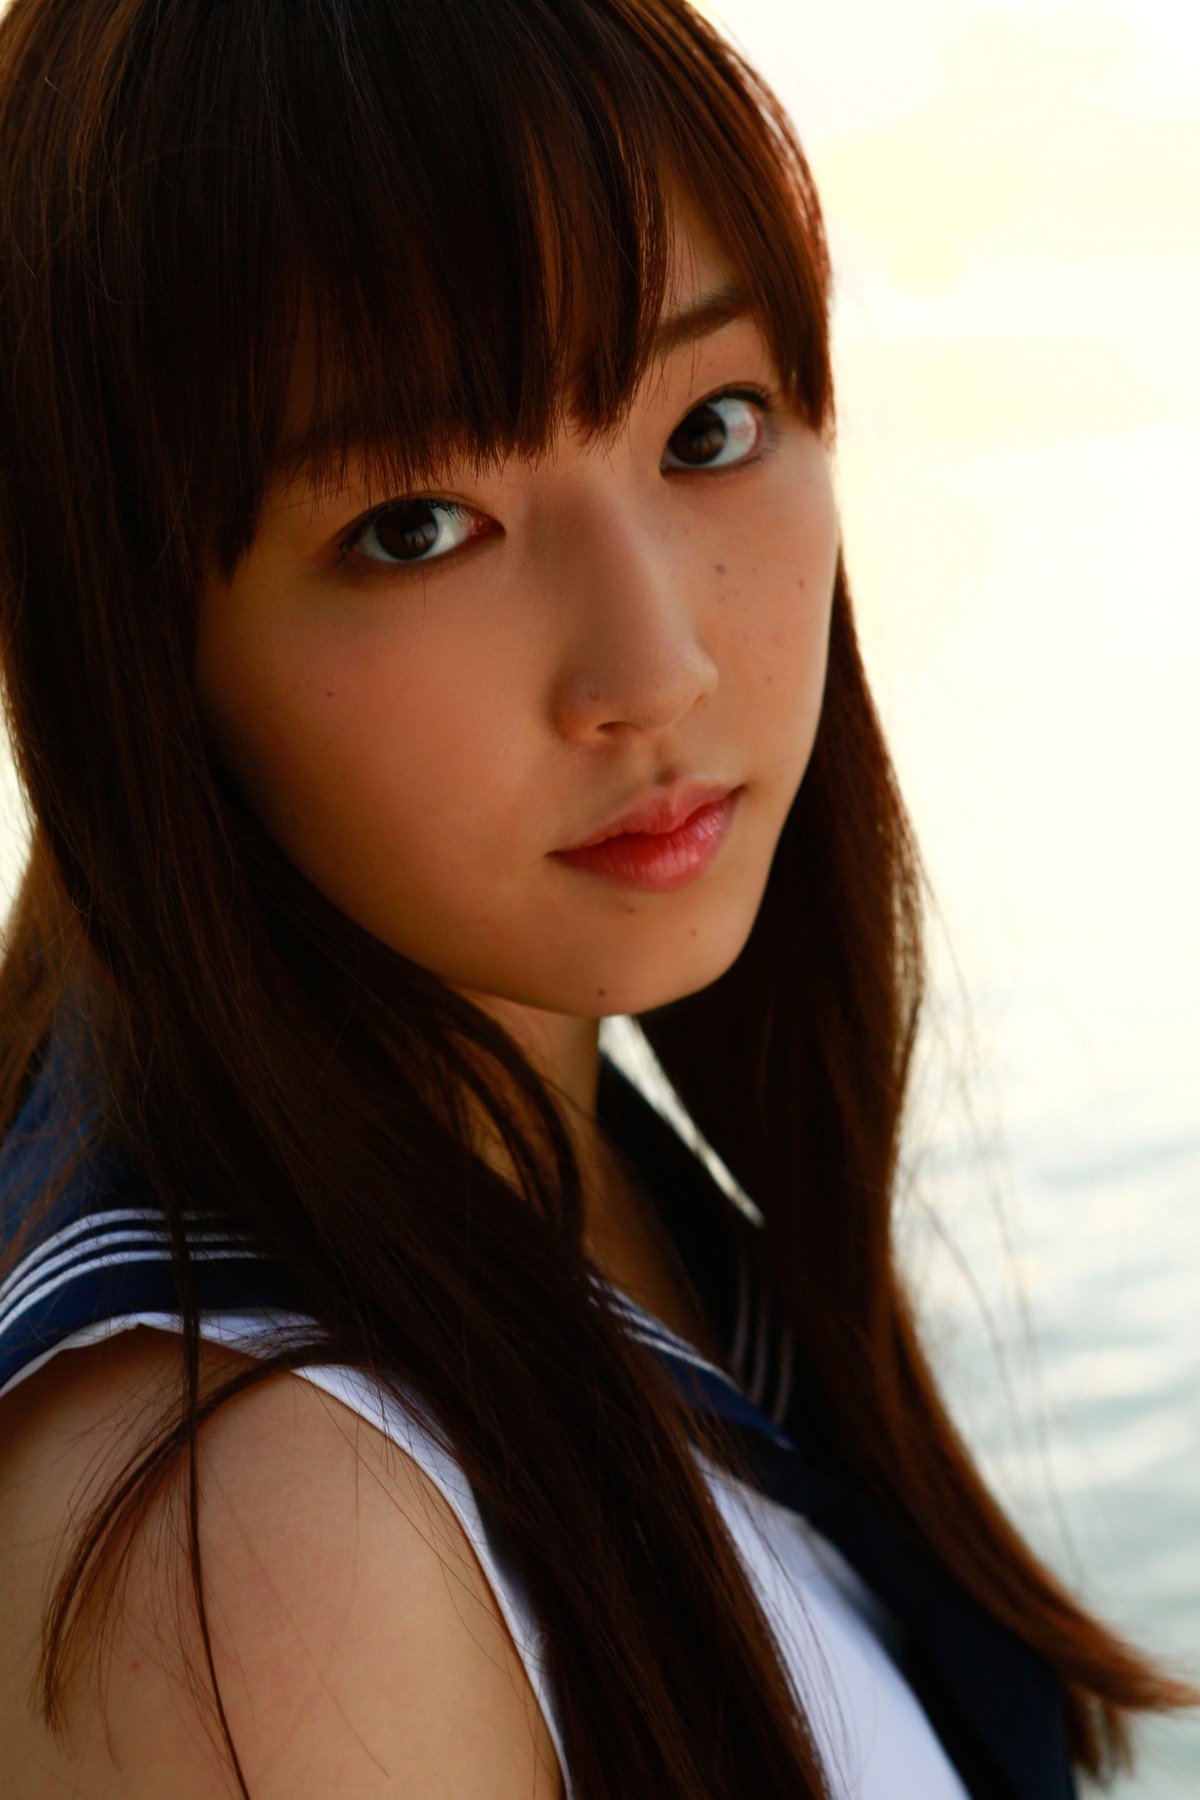 Mizuki Fukumura Morning Musume Asian Women Auburn Hair Brown Eyes Looking At Viewer 1200x1800